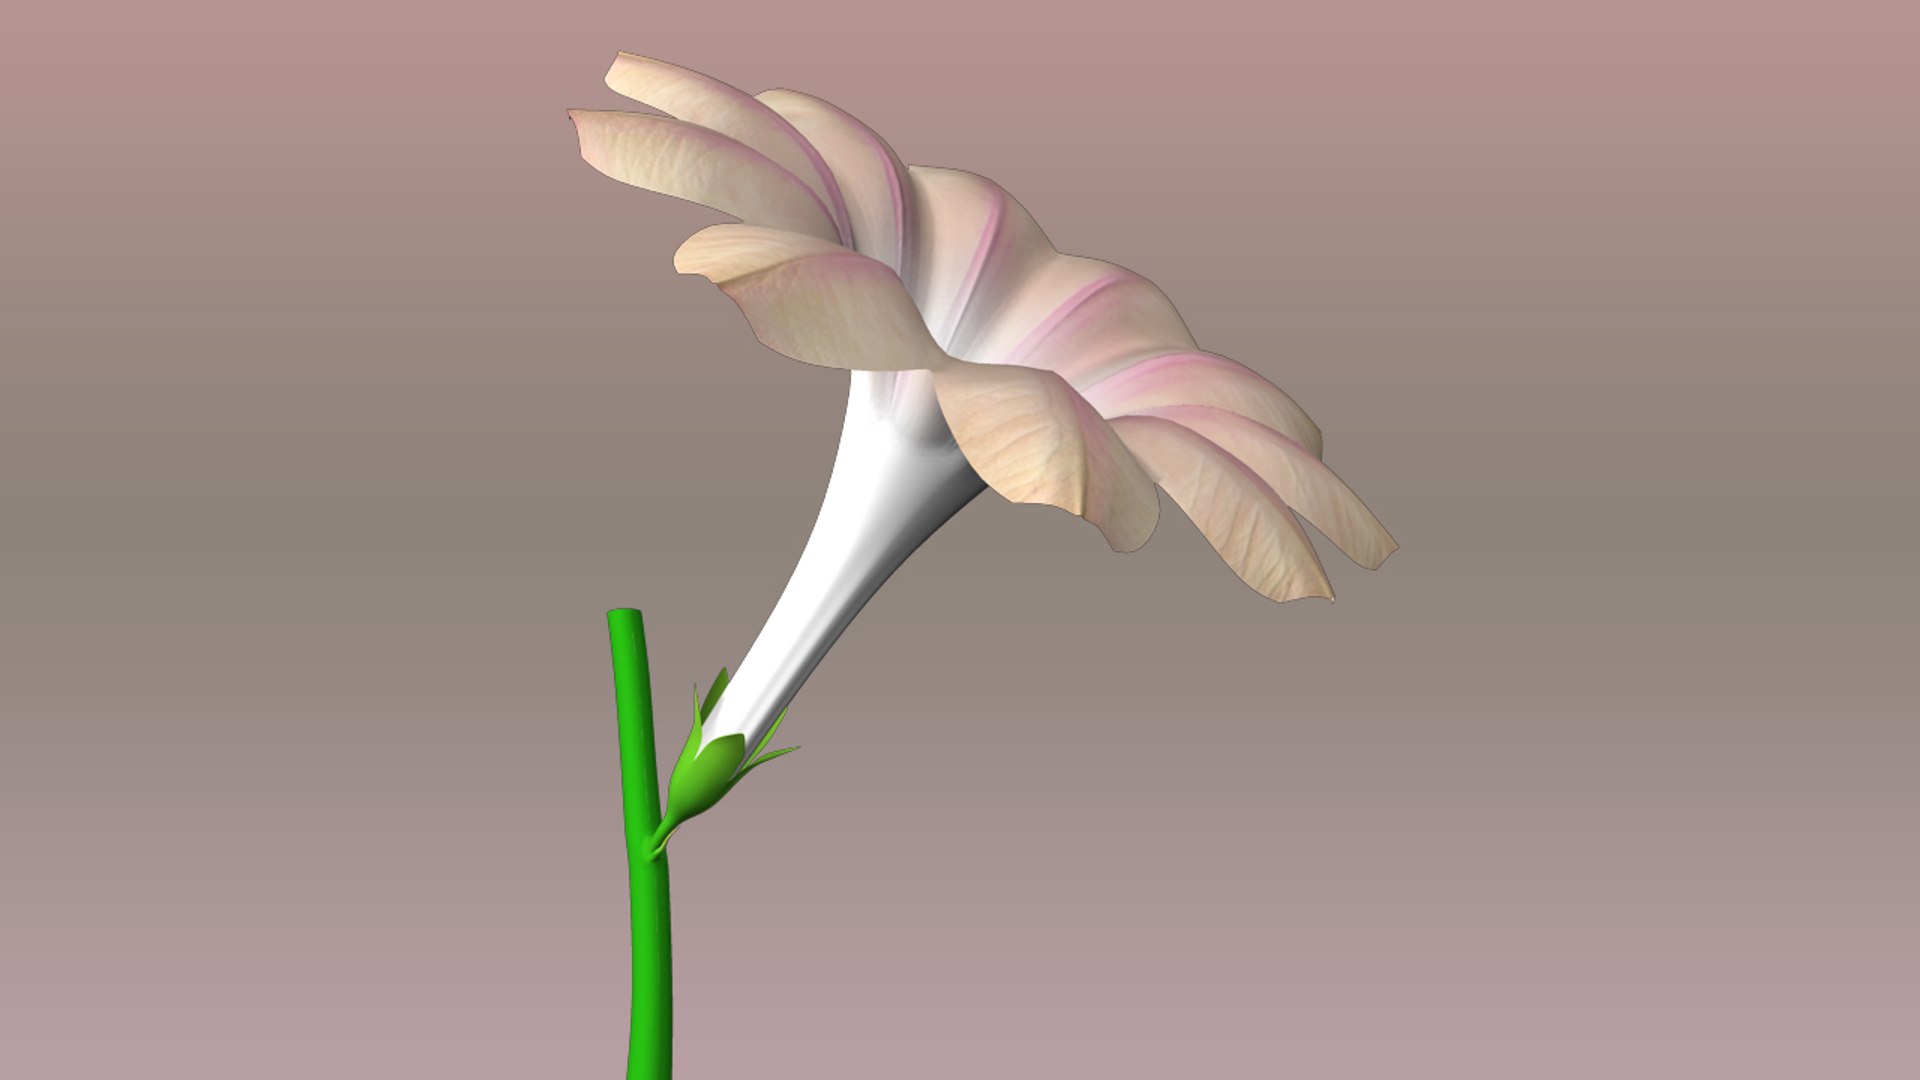 Flower Structure 3d Model